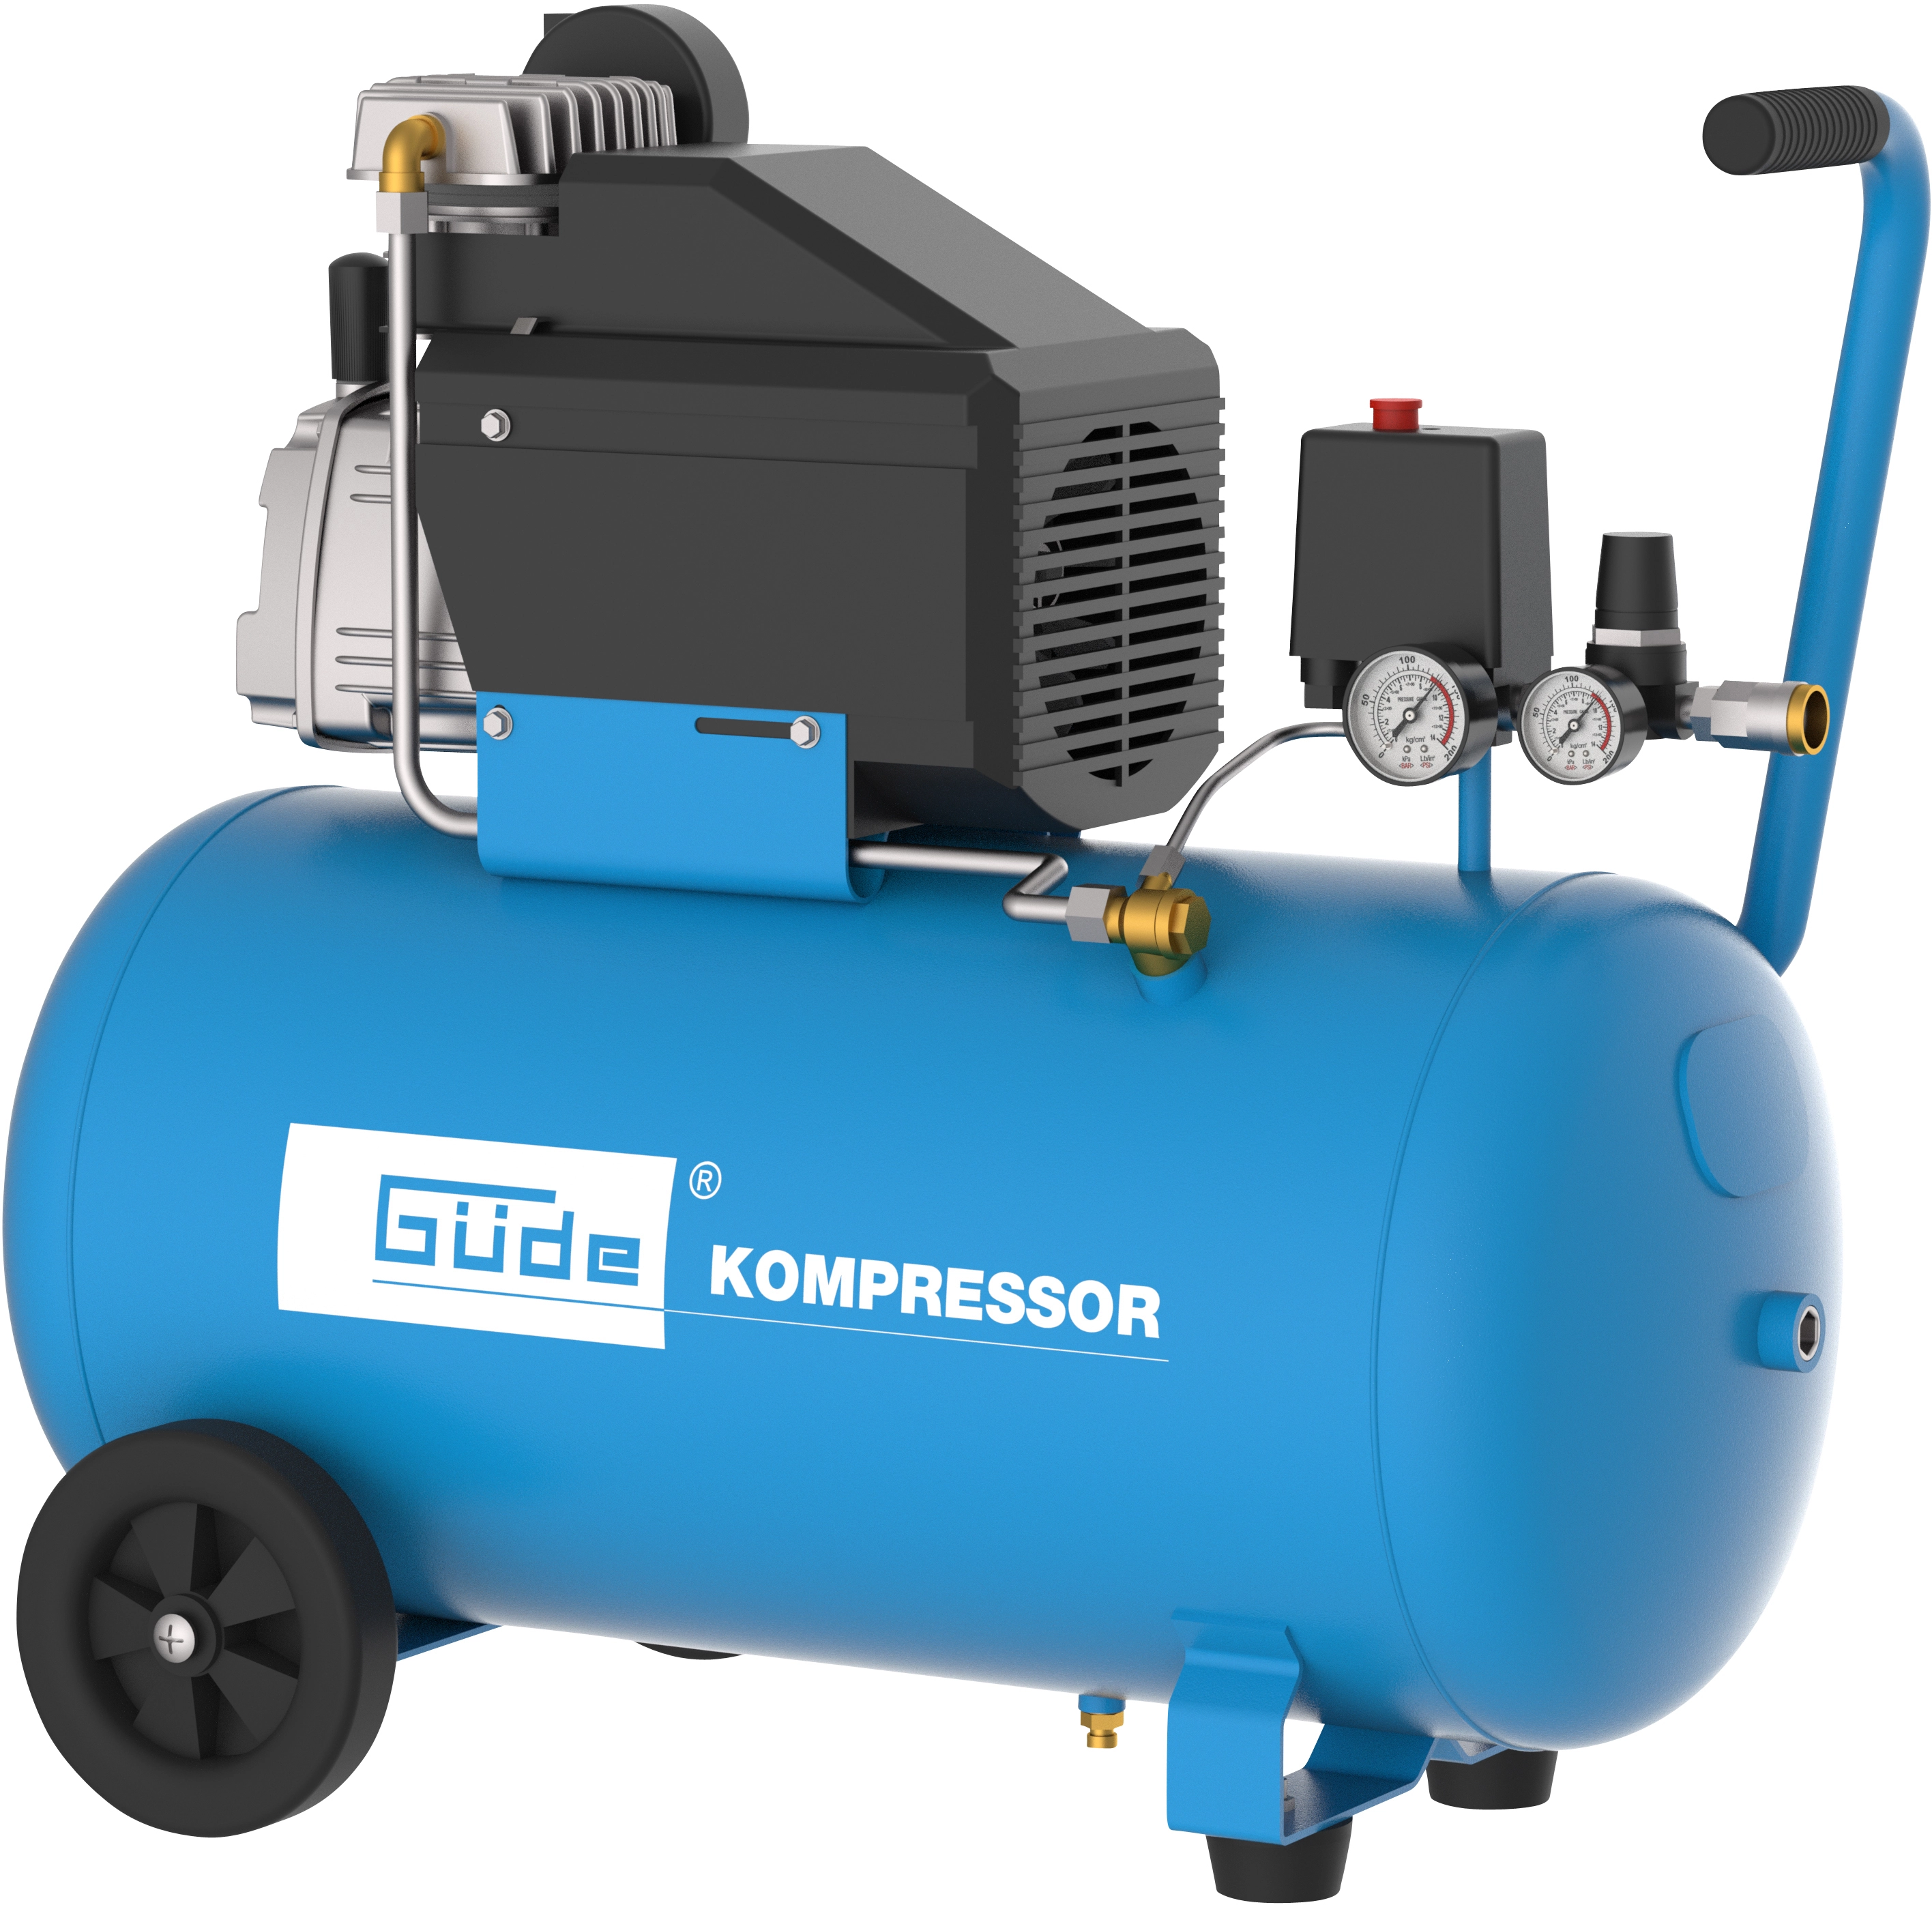 Güde Kompressor-Set 301/10/50 Motorleistung 1,8 kW 12-teilig